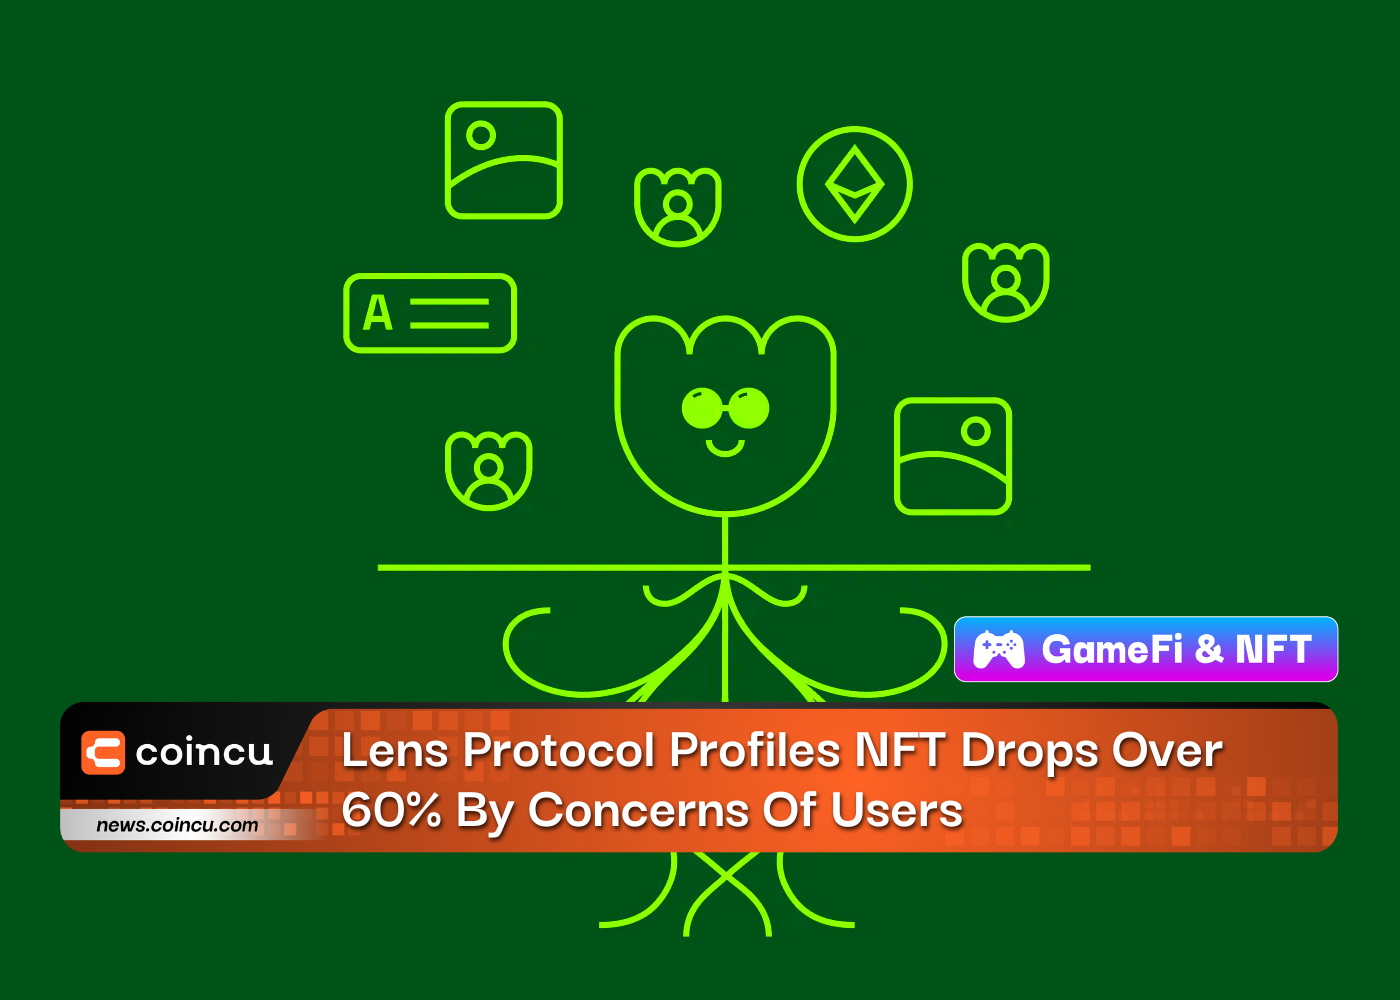 उपयोगकर्ताओं की चिंताओं के कारण लेंस प्रोटोकॉल प्रोफाइल एनएफटी 60% से अधिक गिर गया